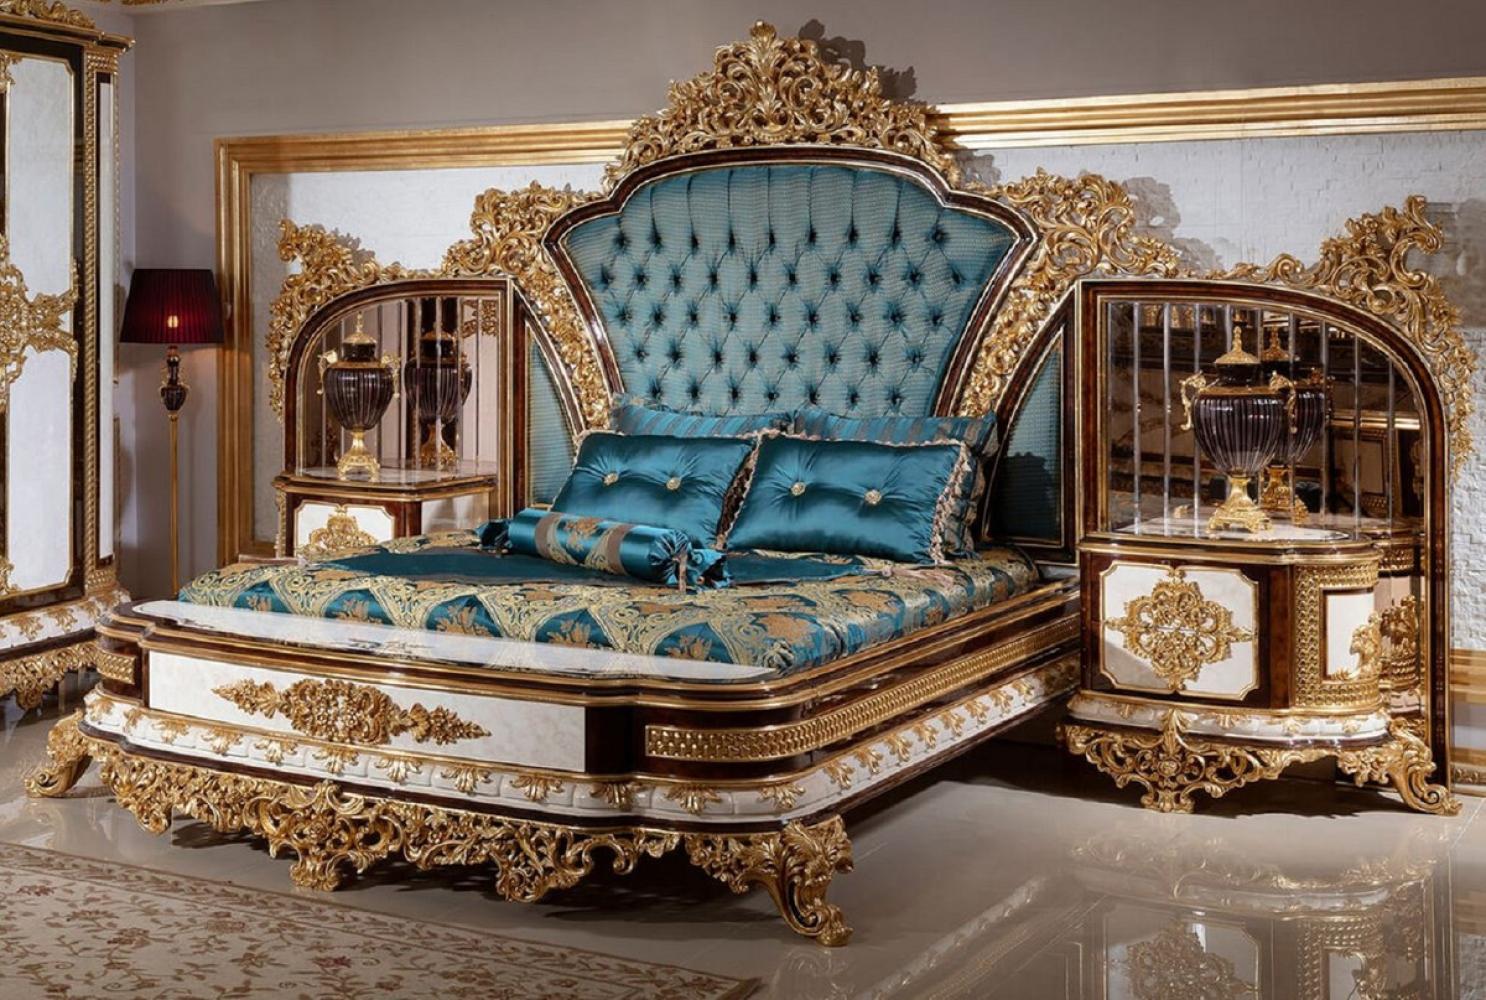 Casa Padrino Luxus Barock Doppelbett Blau / Weiß / Braun / Gold - Prunkvolles Massivholz Bett mit verspiegeltem Kopfteil - Schlafzimmer Möbel im Barockstil - Edel & Prunkvoll Bild 1